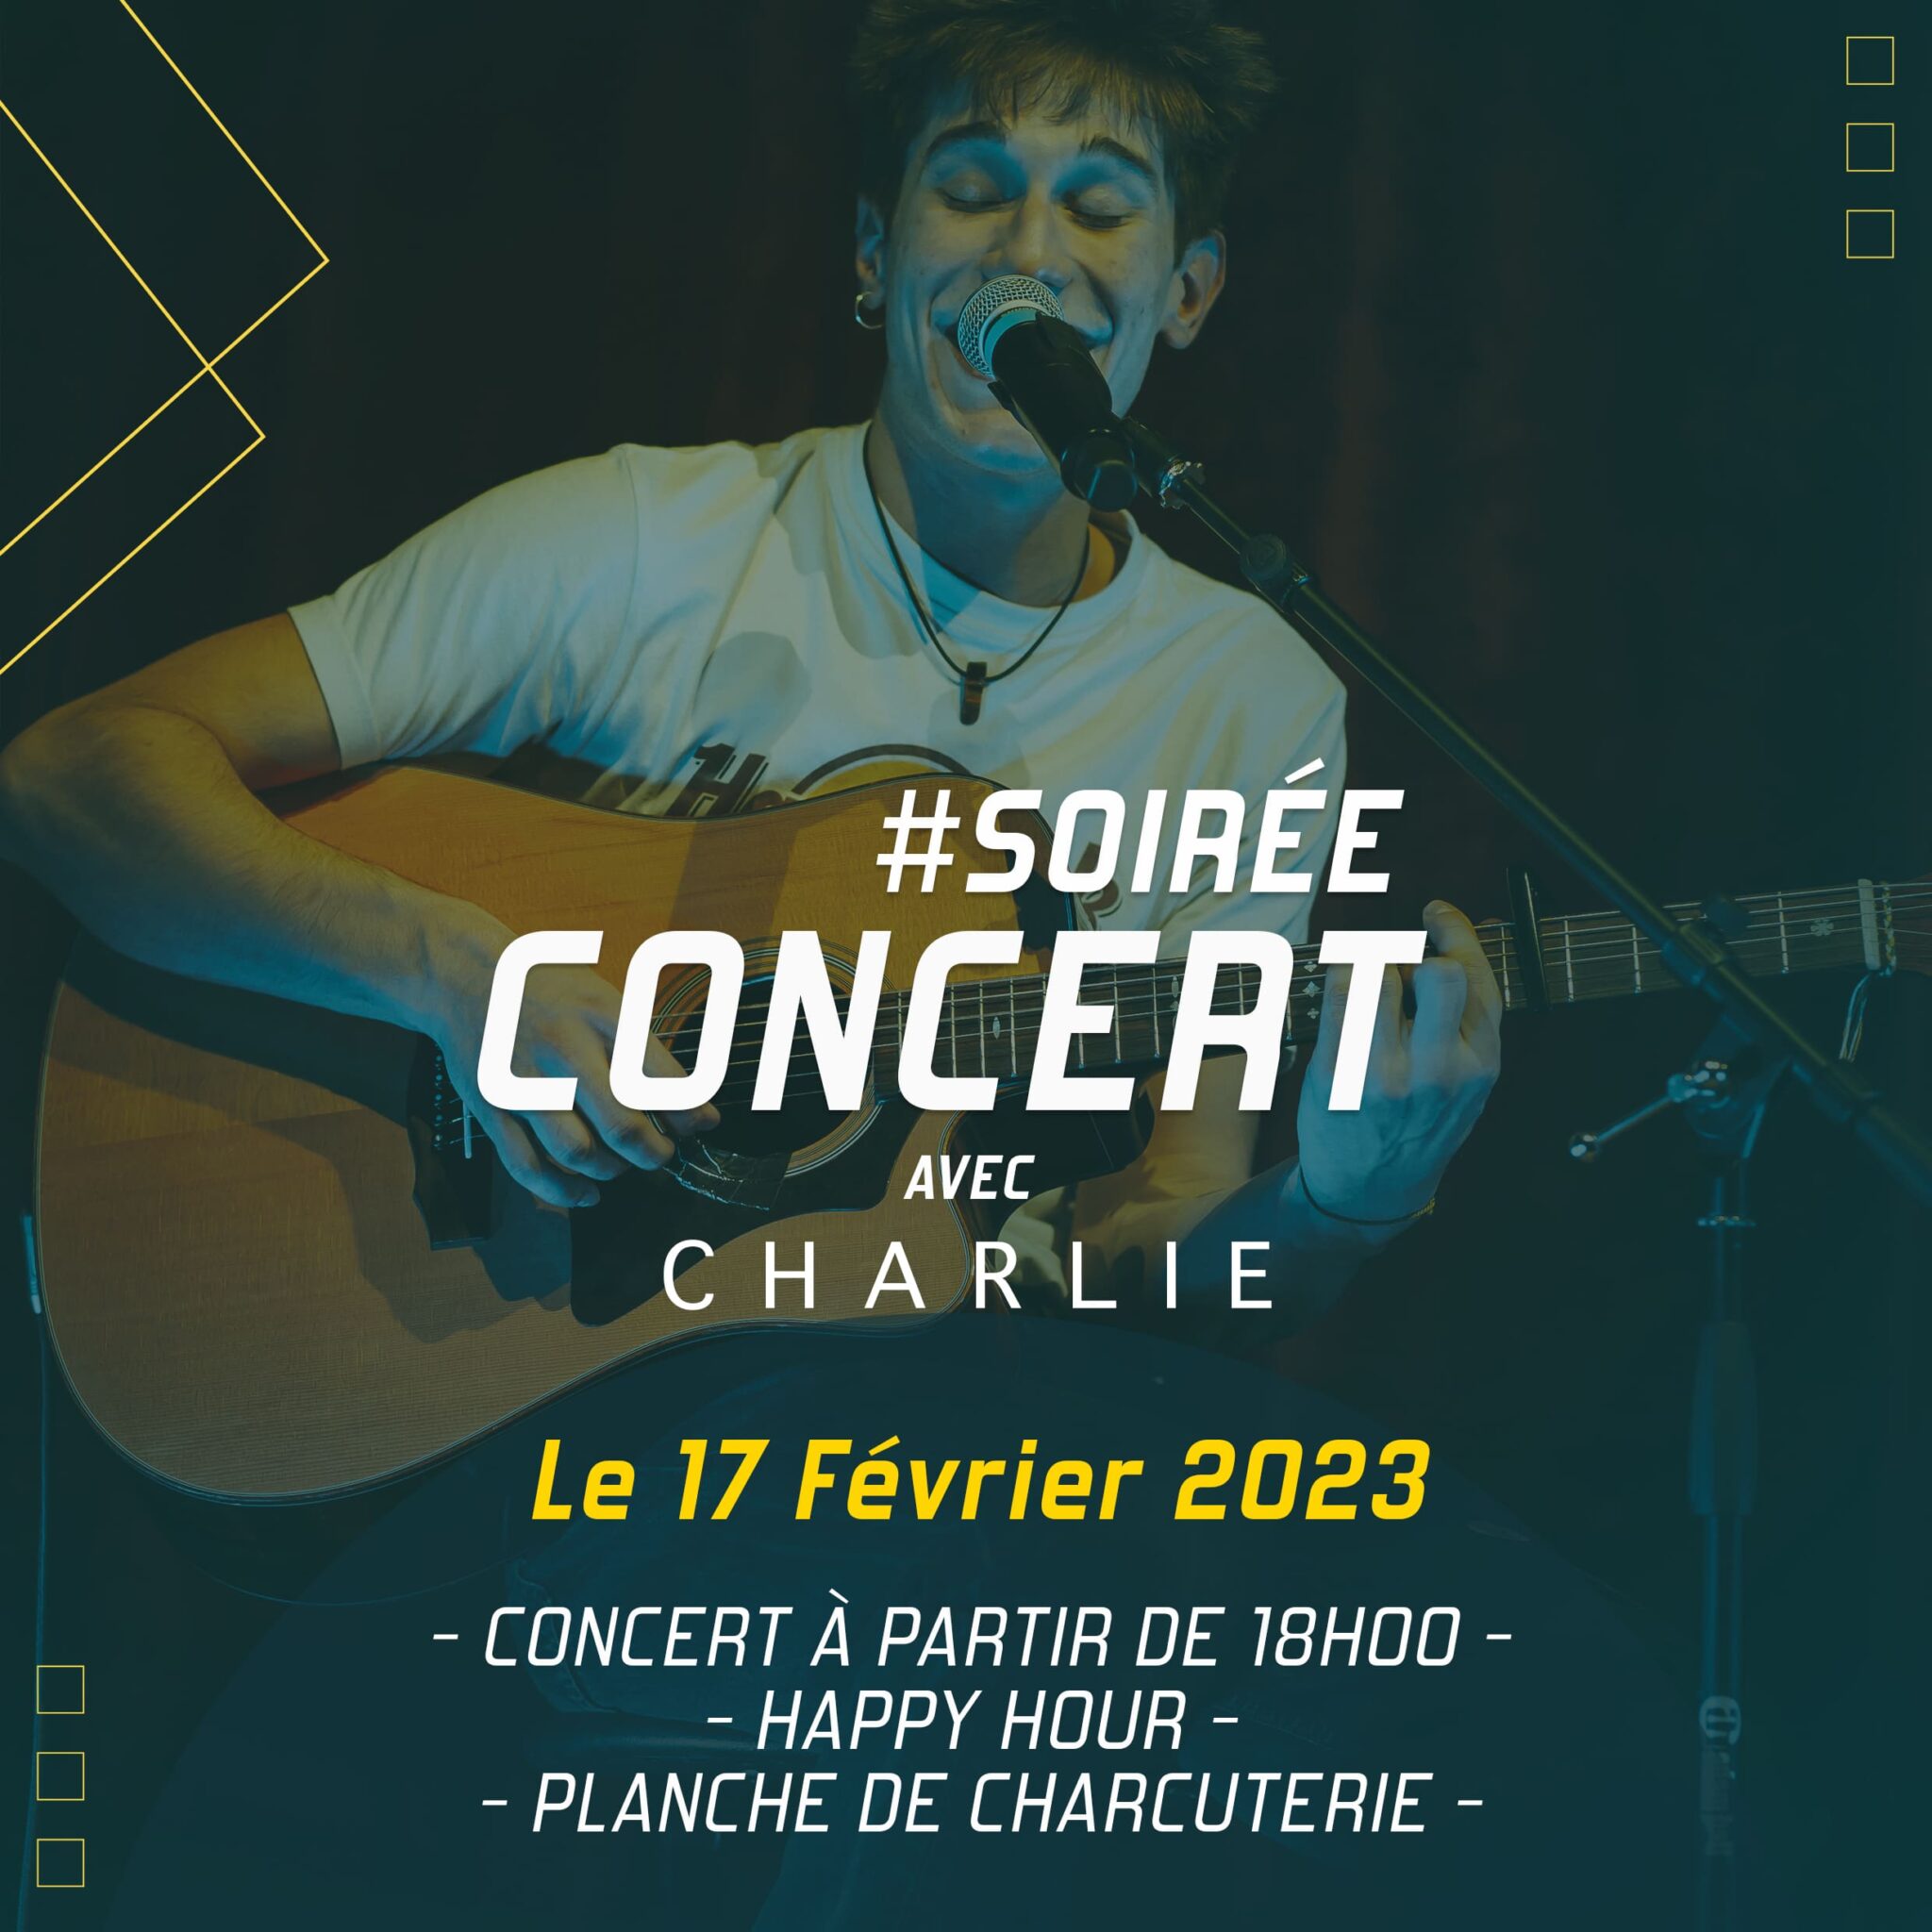 Soirée Concert avec Charlie à Vertical'Art Orléans samedi 18 février 2023